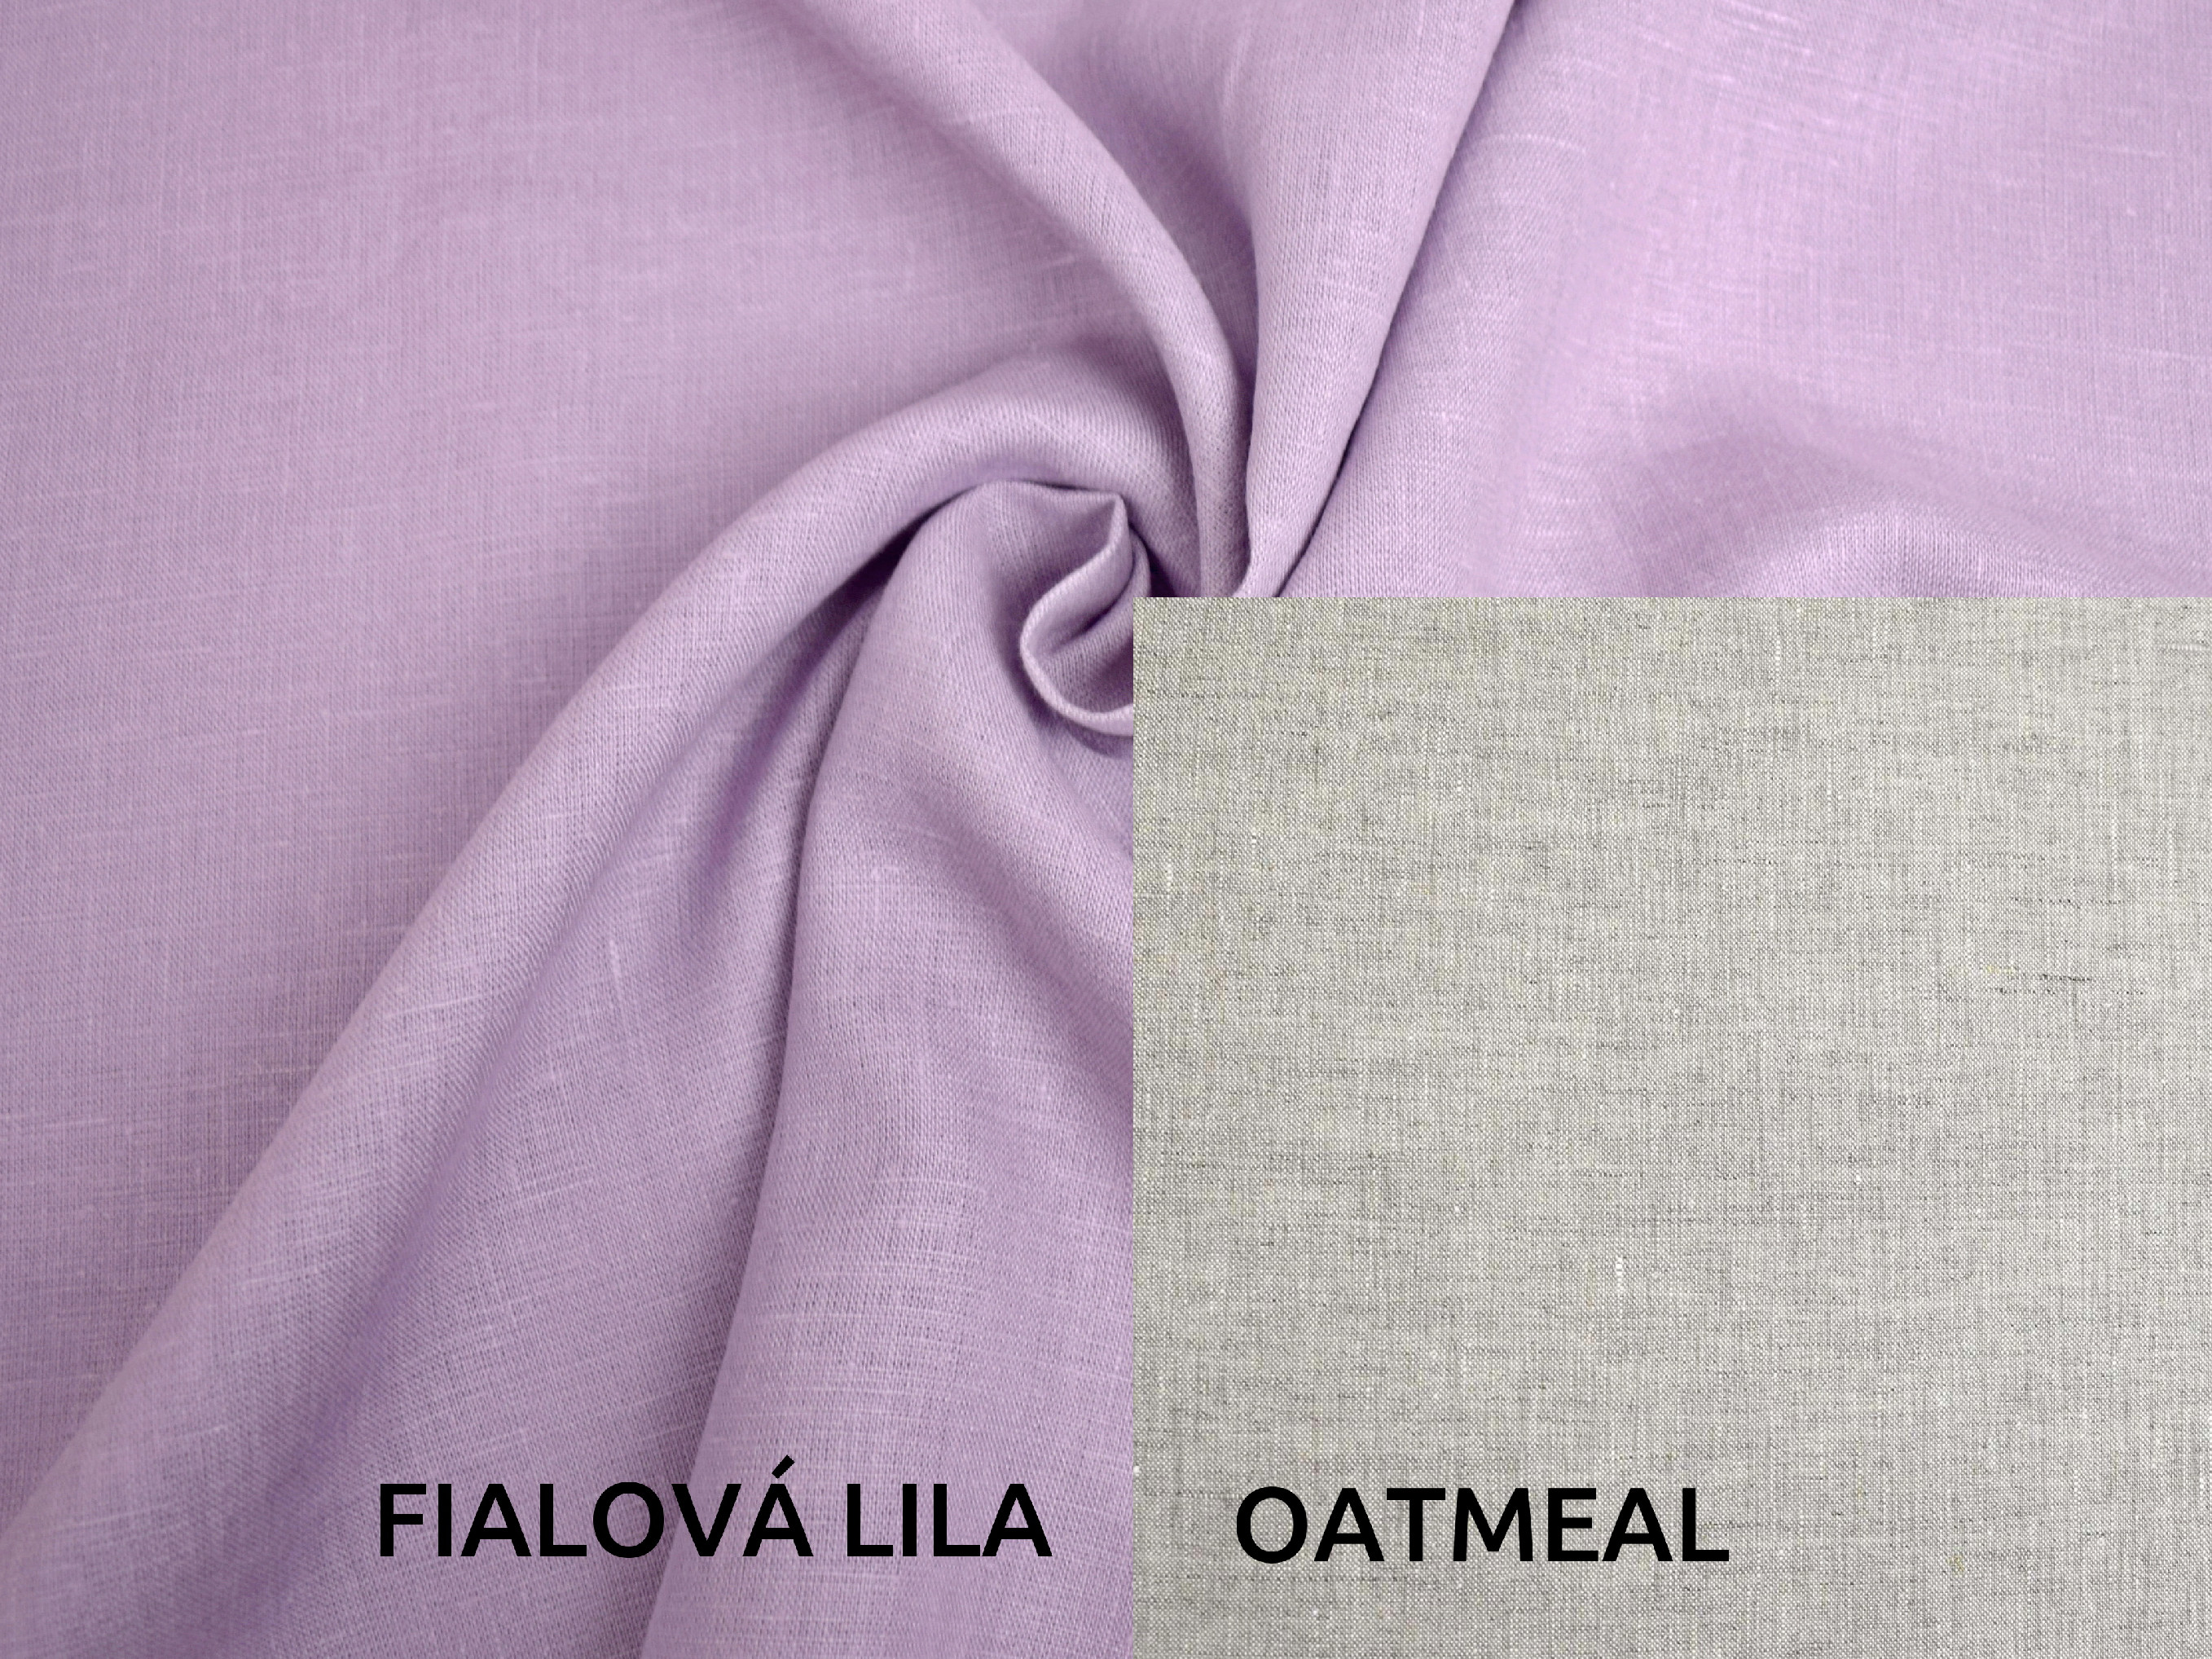 Lněná deka s prošitím fialová lila, oatmeal